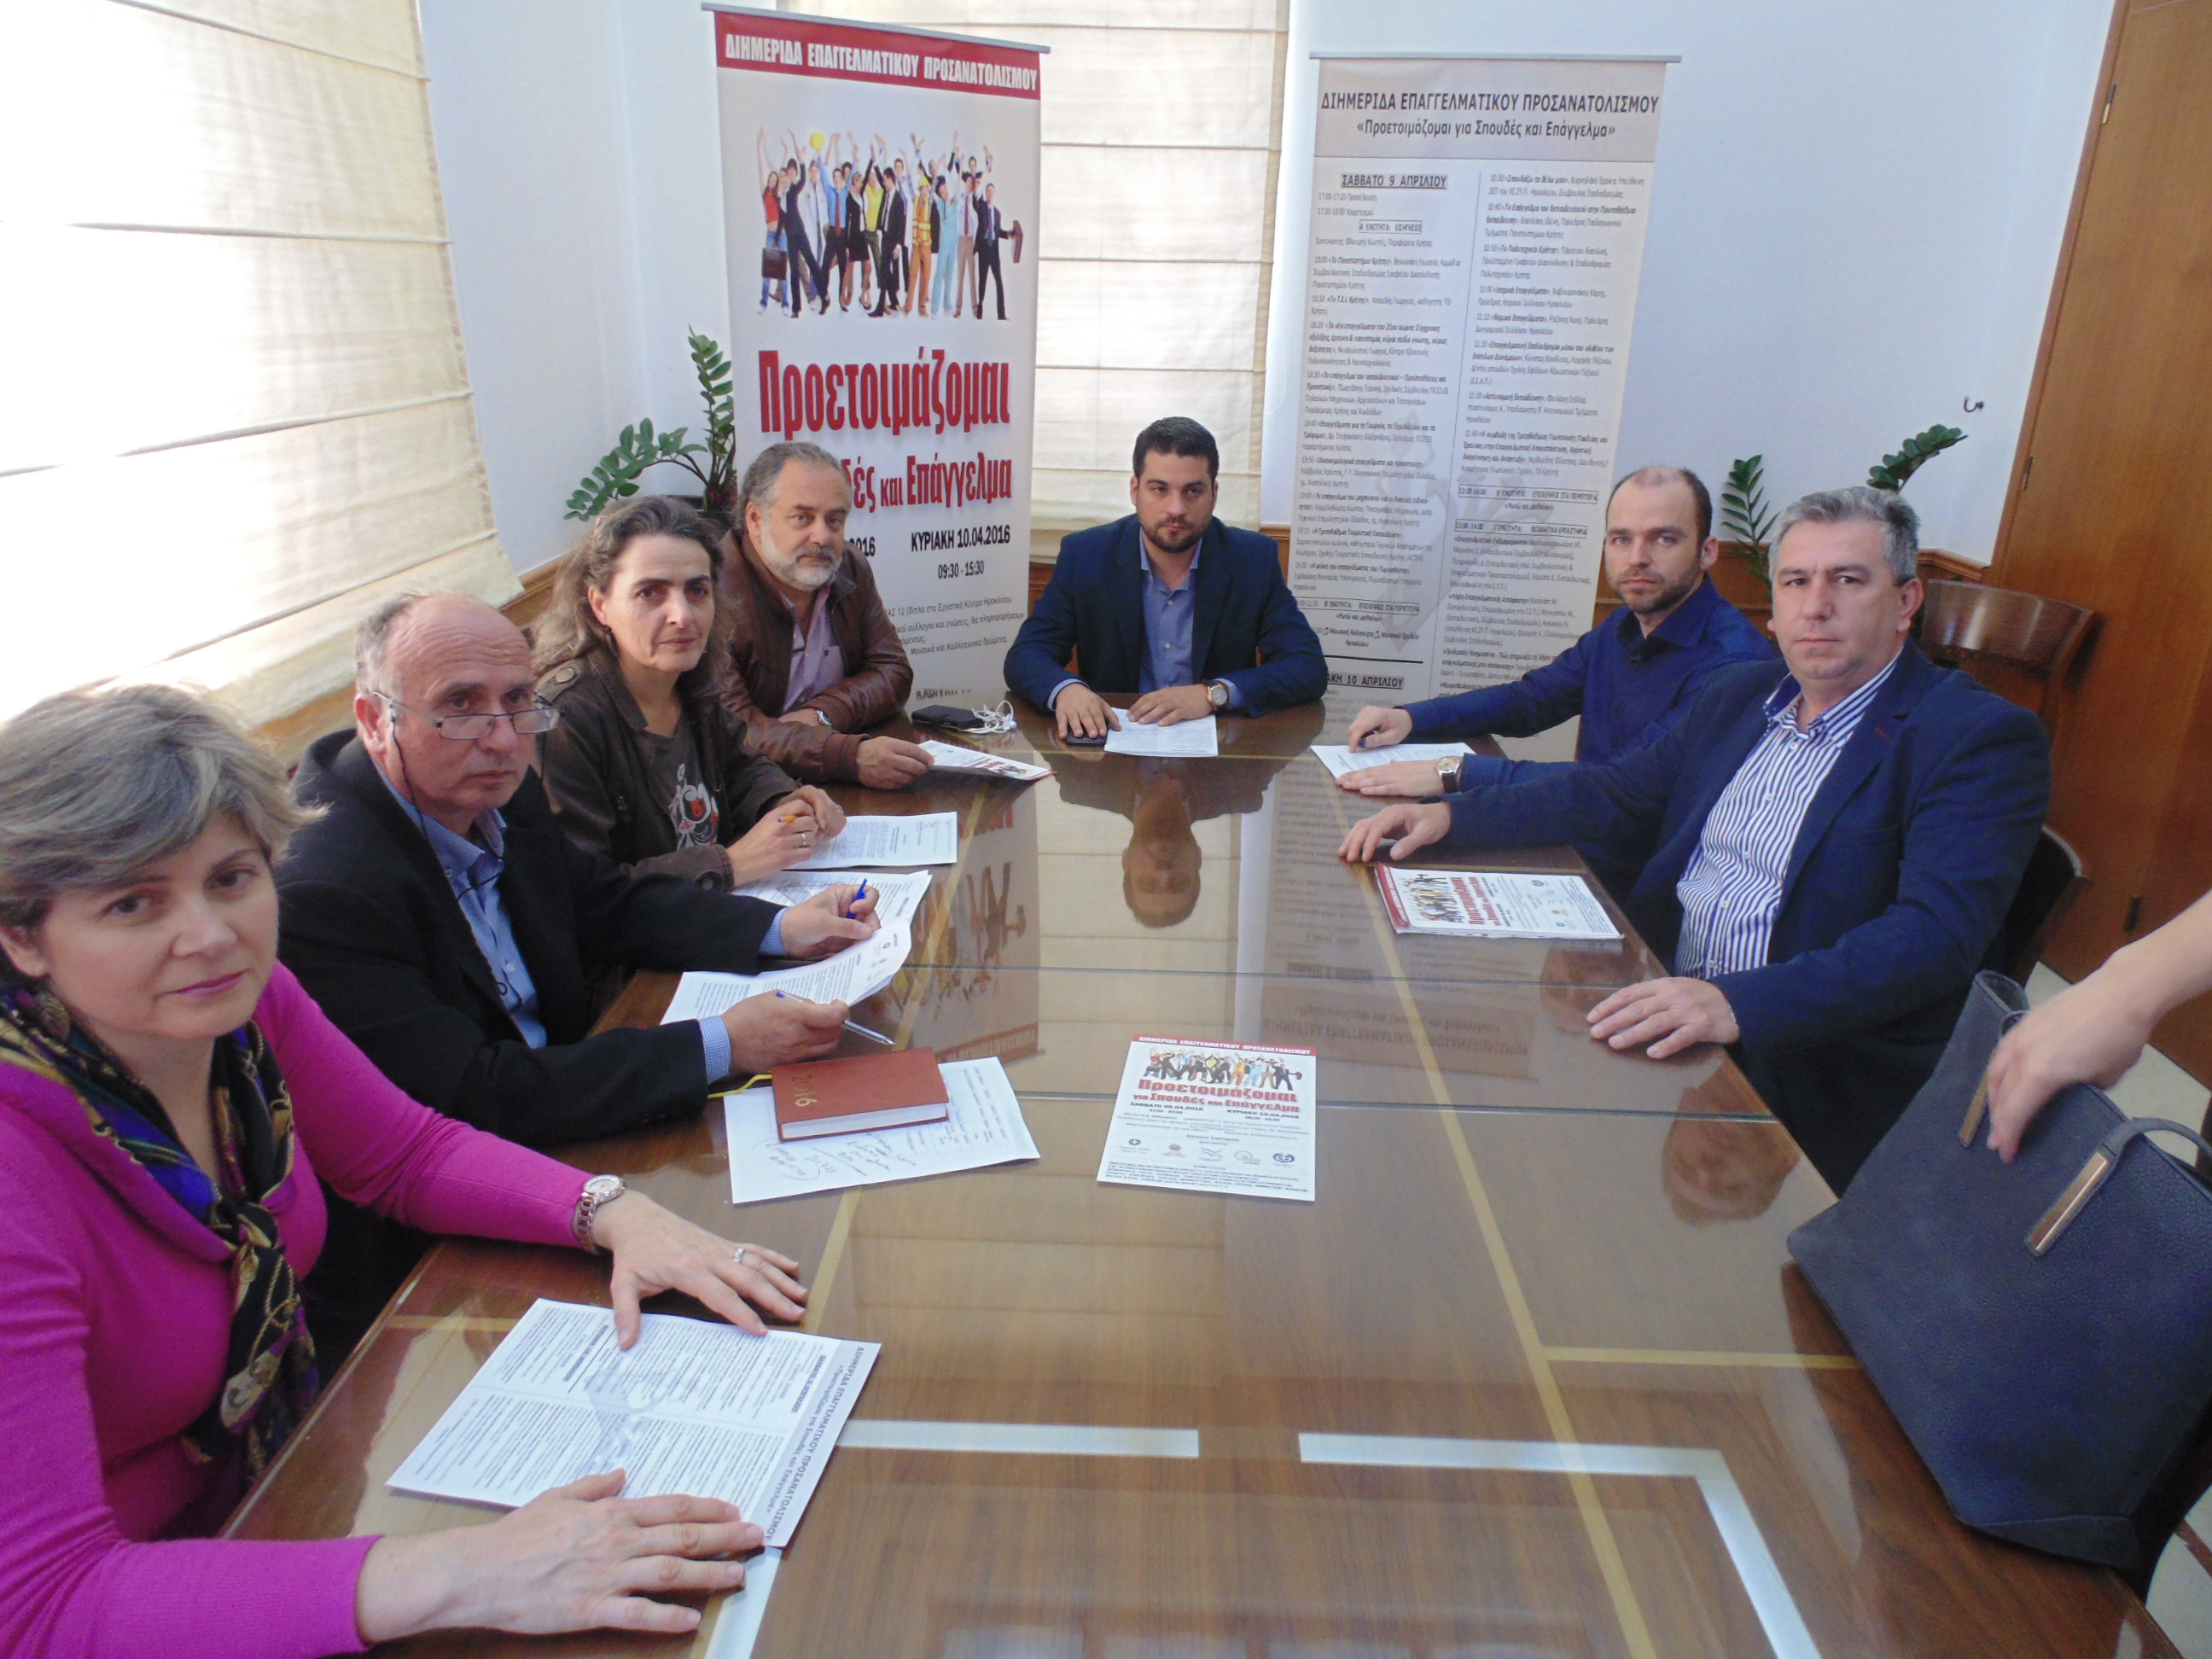 Πραγματοποιείται διημερίδα επαγγελματικού προσανατολισμού στο Ηράκλειο